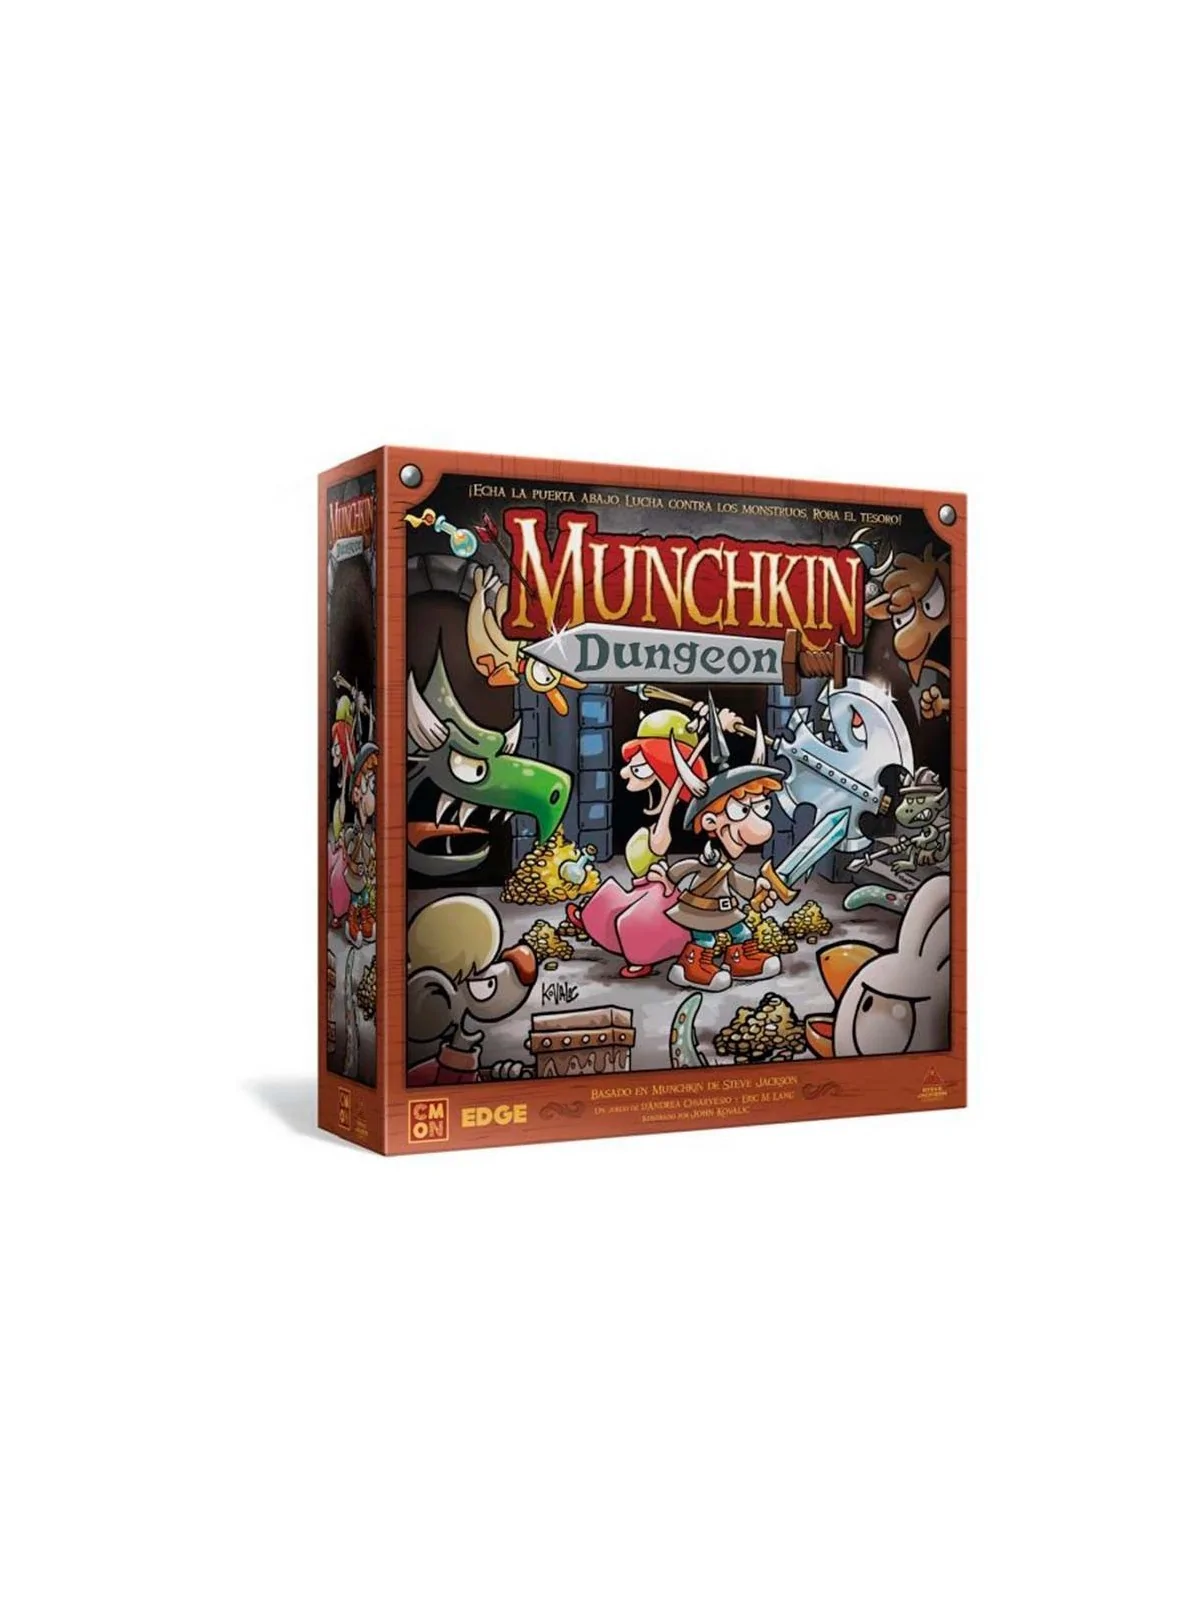 Comprar Munchkin Dungeon barato al mejor precio 62,99 € de Edge